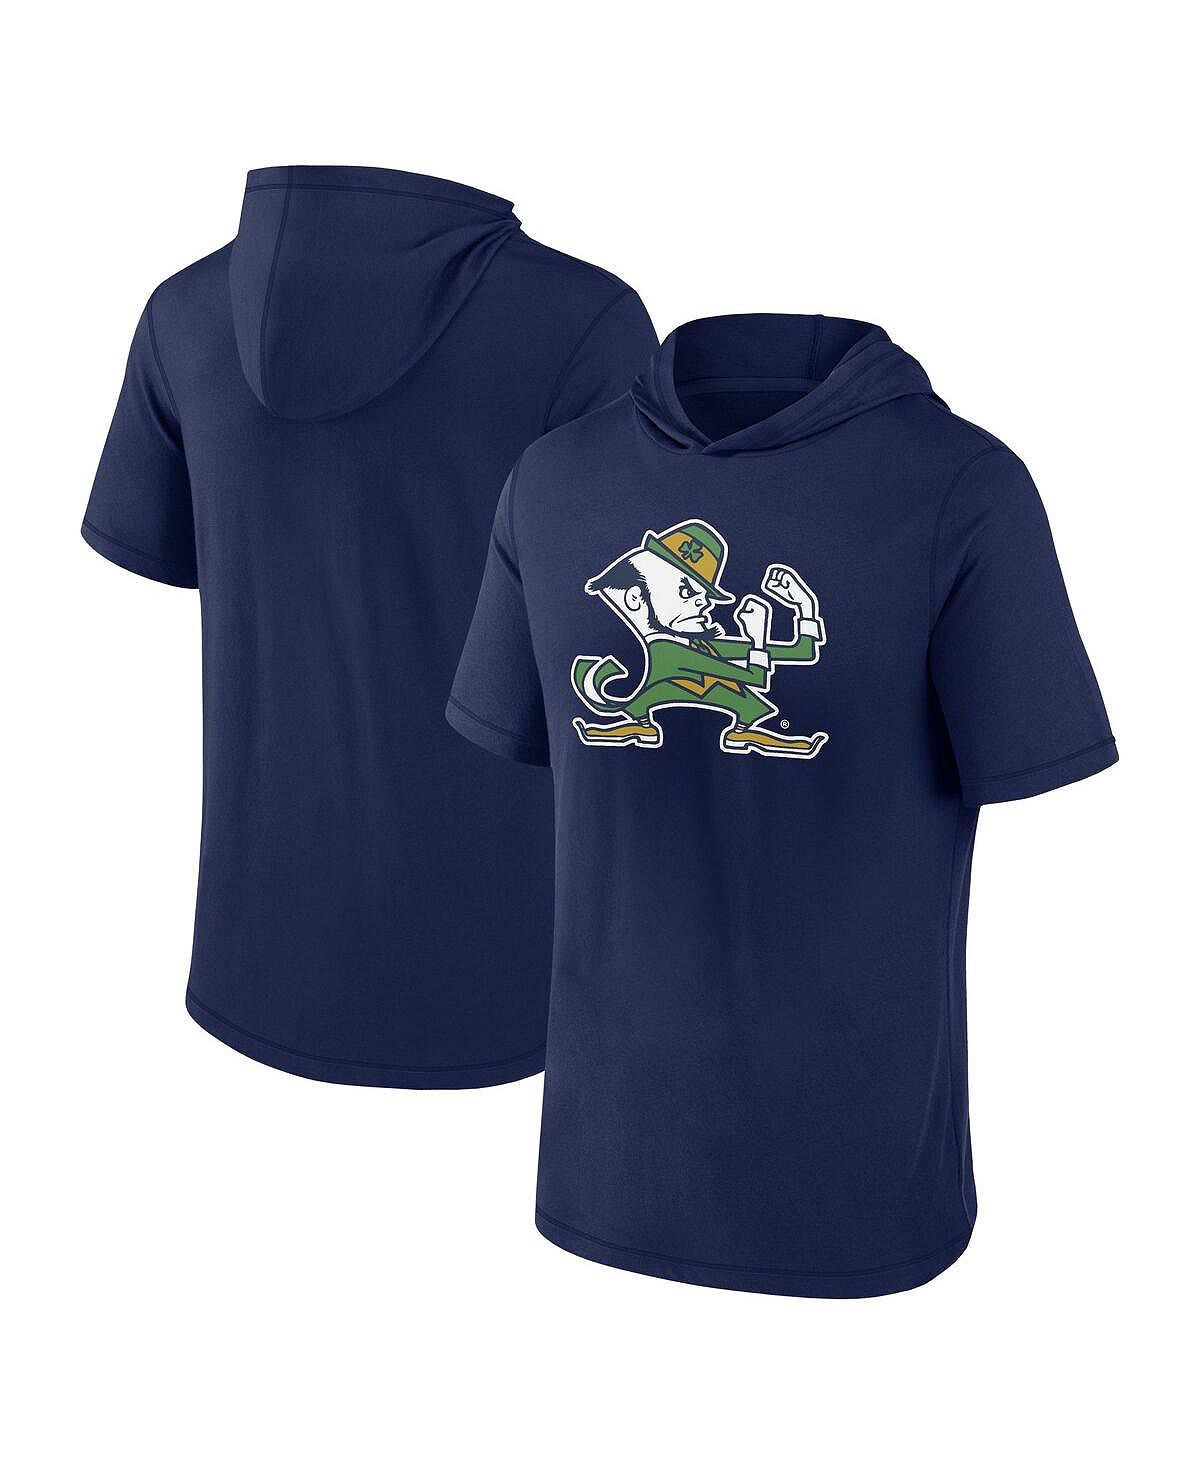 Мужская темно-синяя футболка с капюшоном с фирменным логотипом Notre Dame Fighting Irish Primary Fanatics goetz adrien notre dame de l humanité